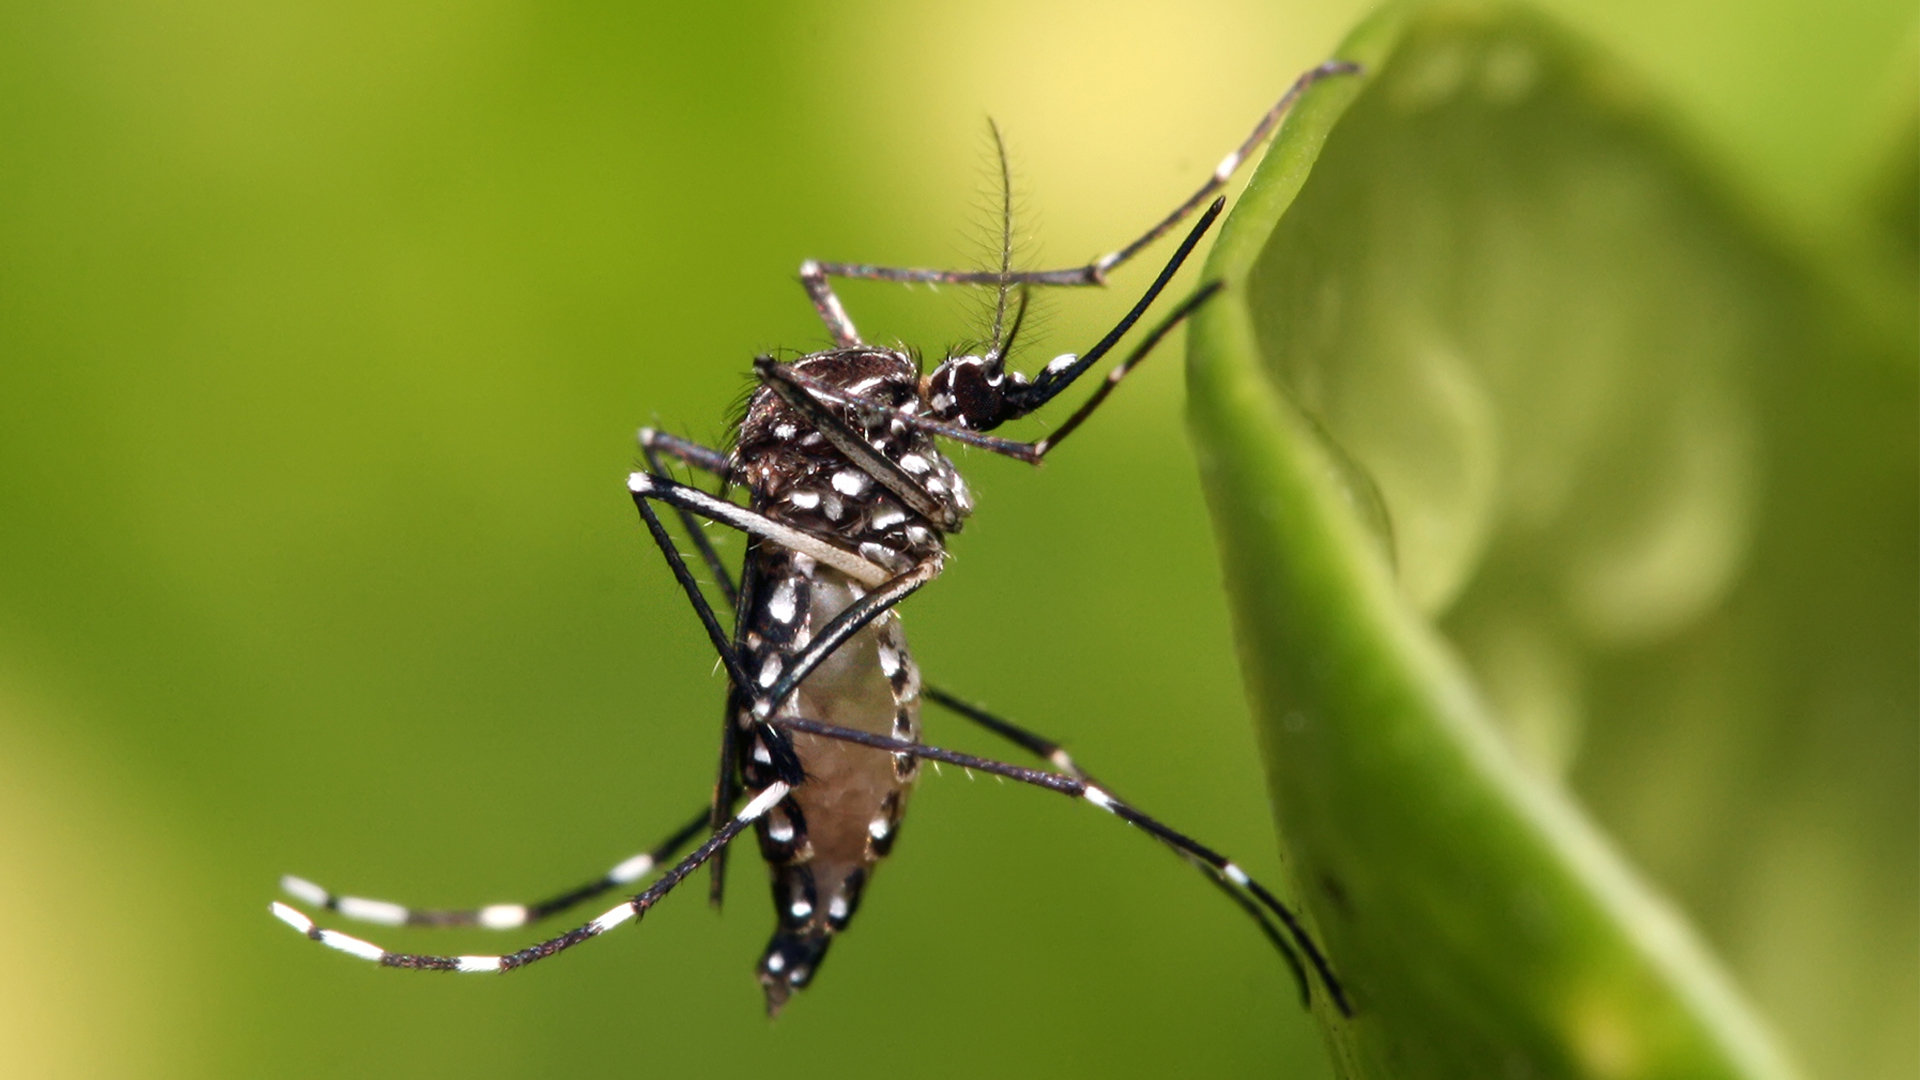 El mosquito hembra del género Aedes aegypti es el principal vector del virus del dengue